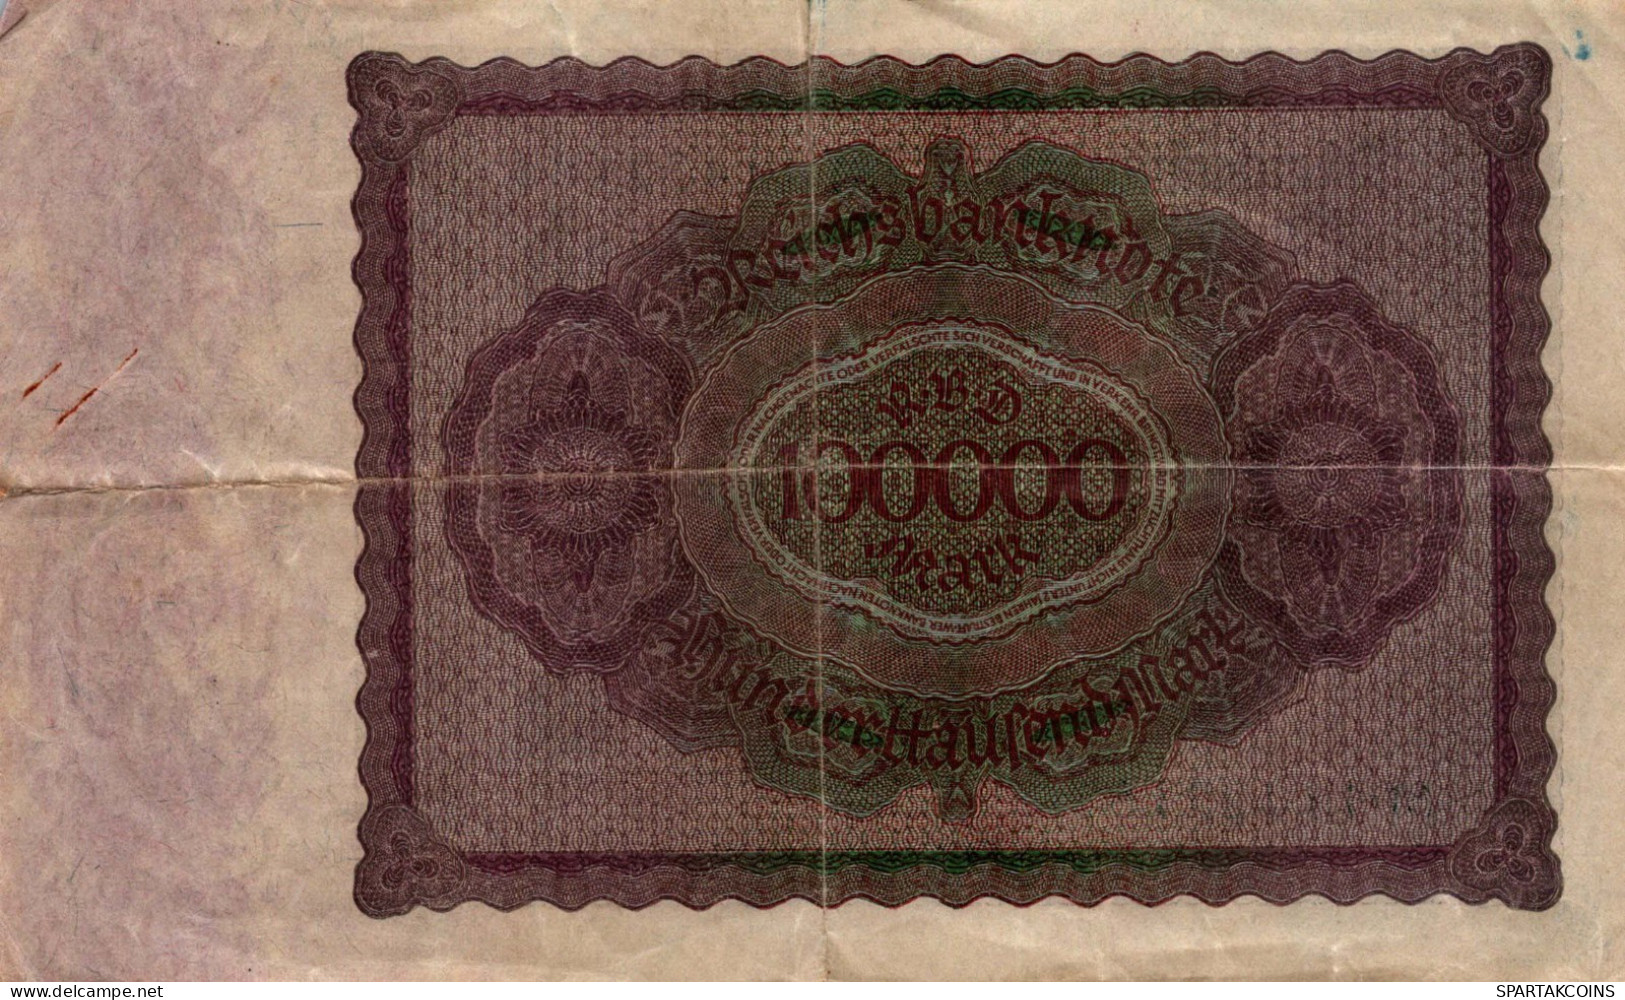 100000 MARK 1923 Stadt BERLIN DEUTSCHLAND Papiergeld Banknote #PL133 - [11] Local Banknote Issues